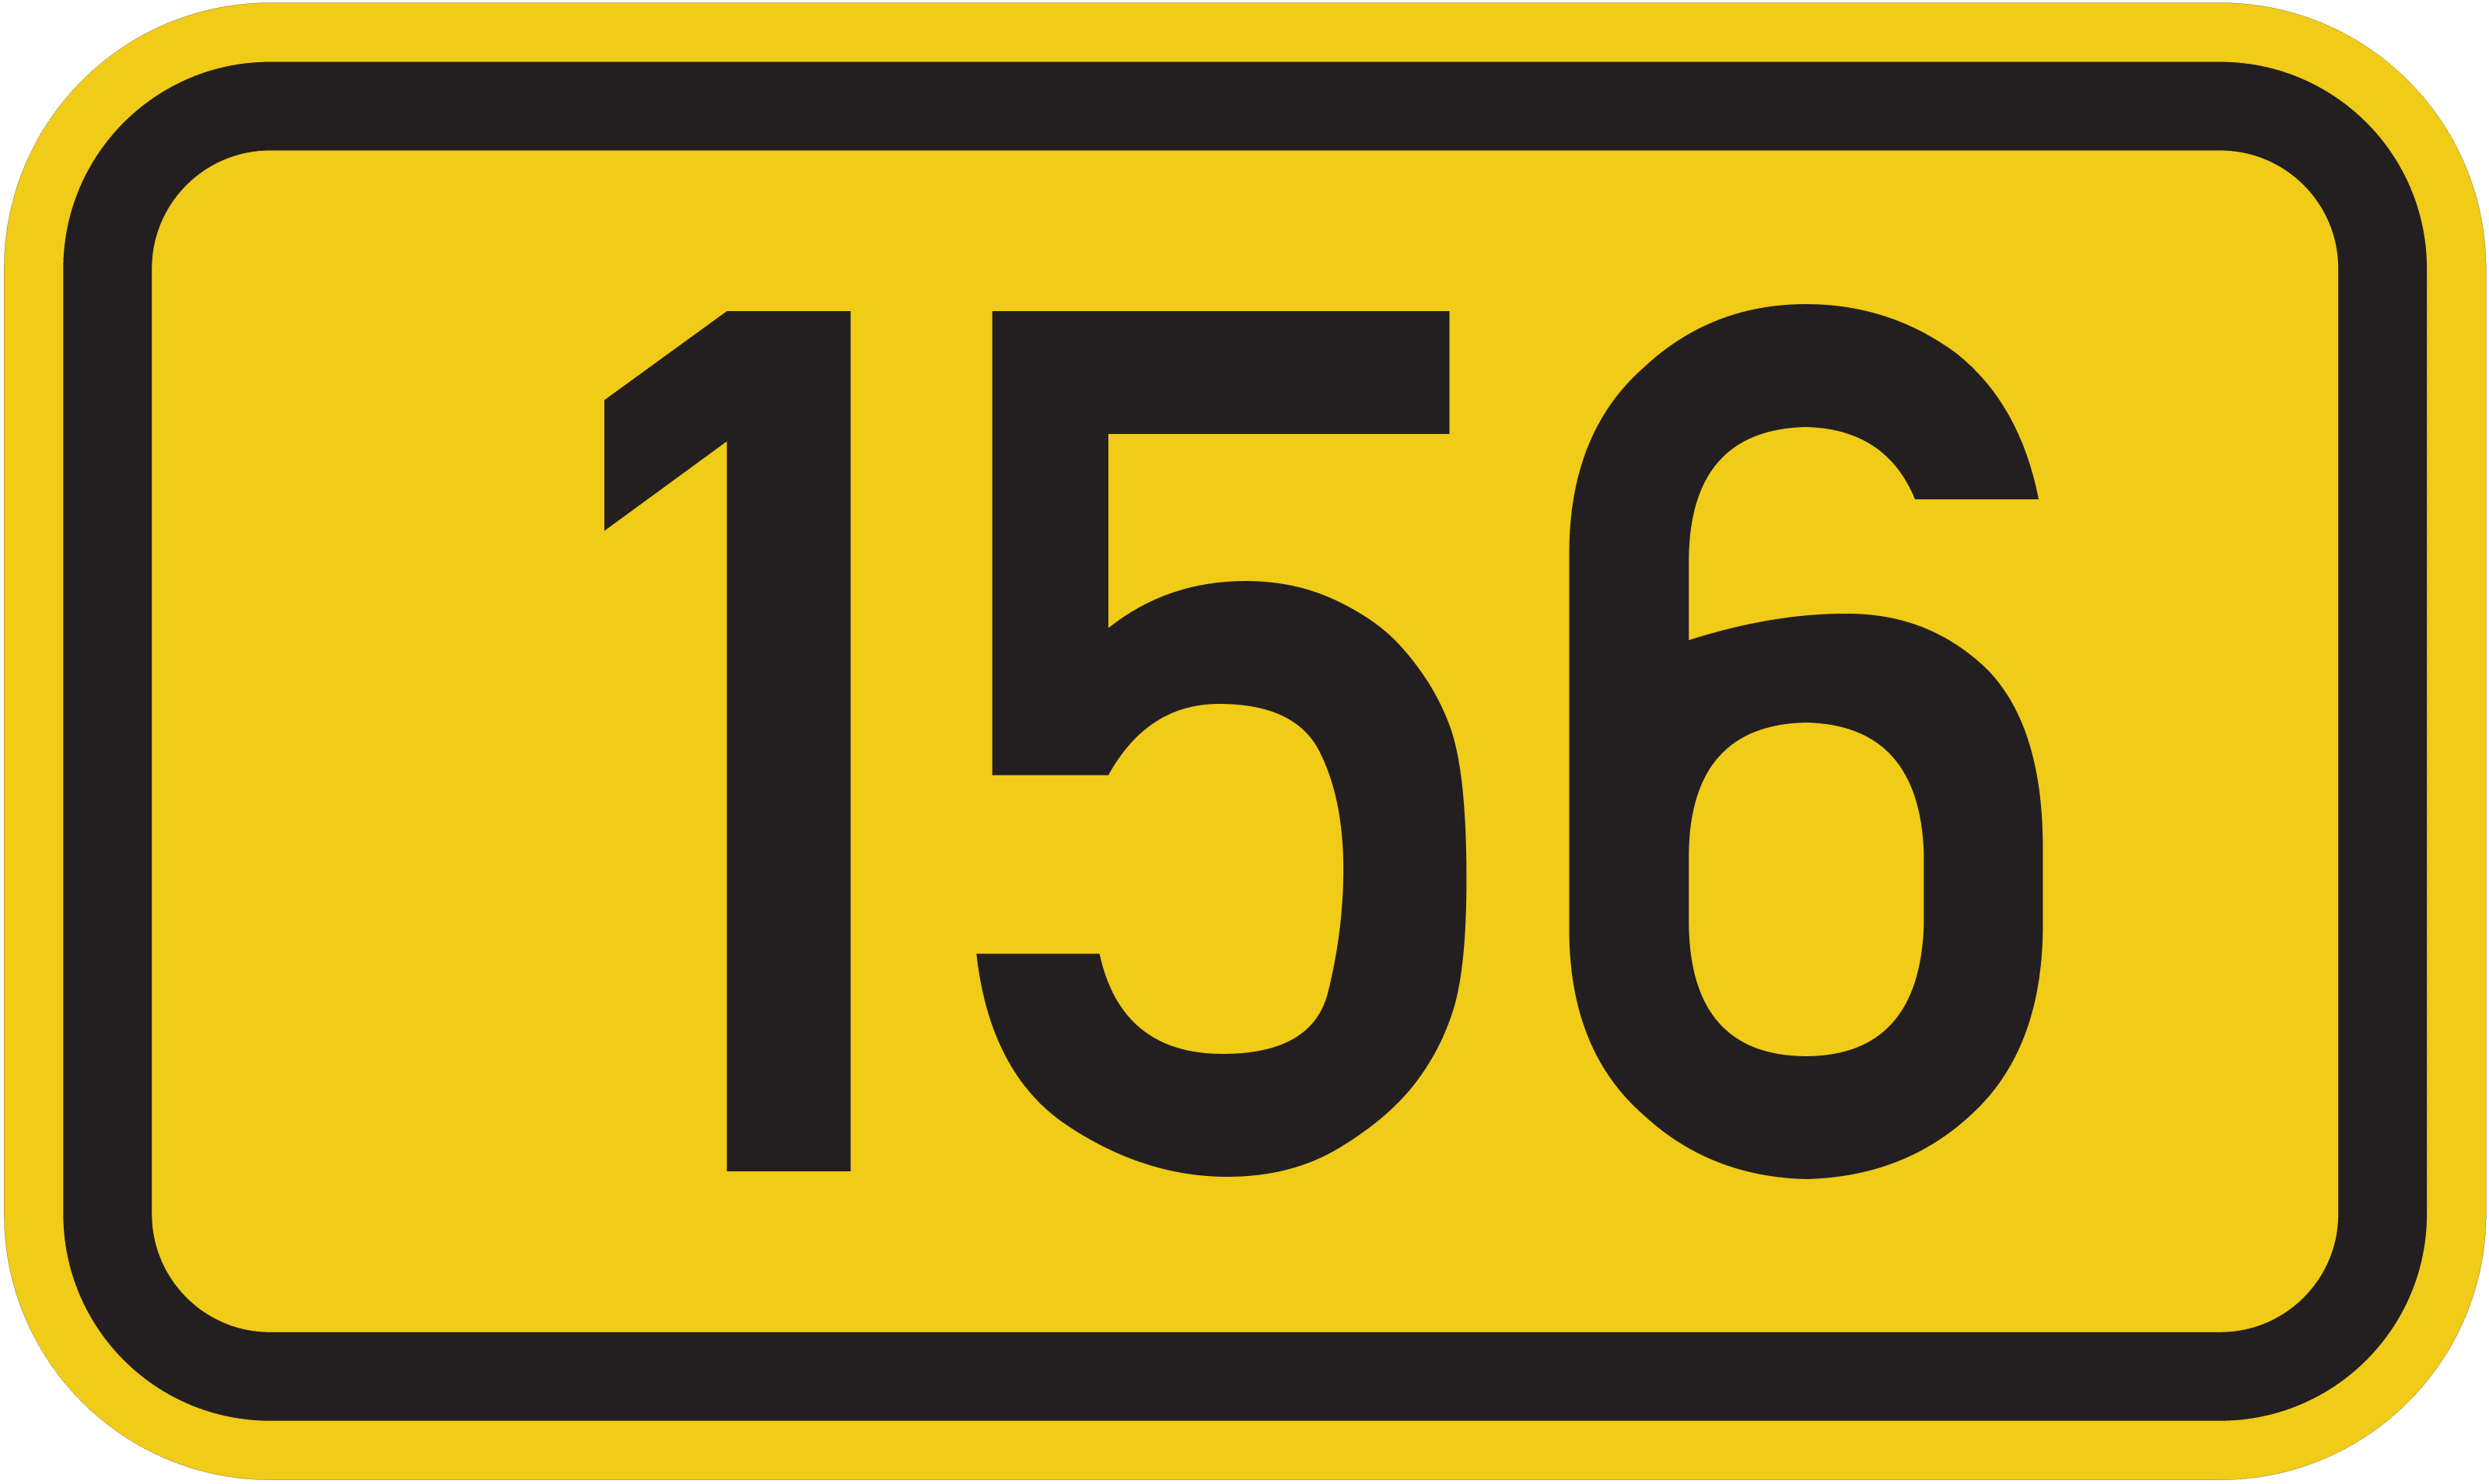 Bundesstraße B 156